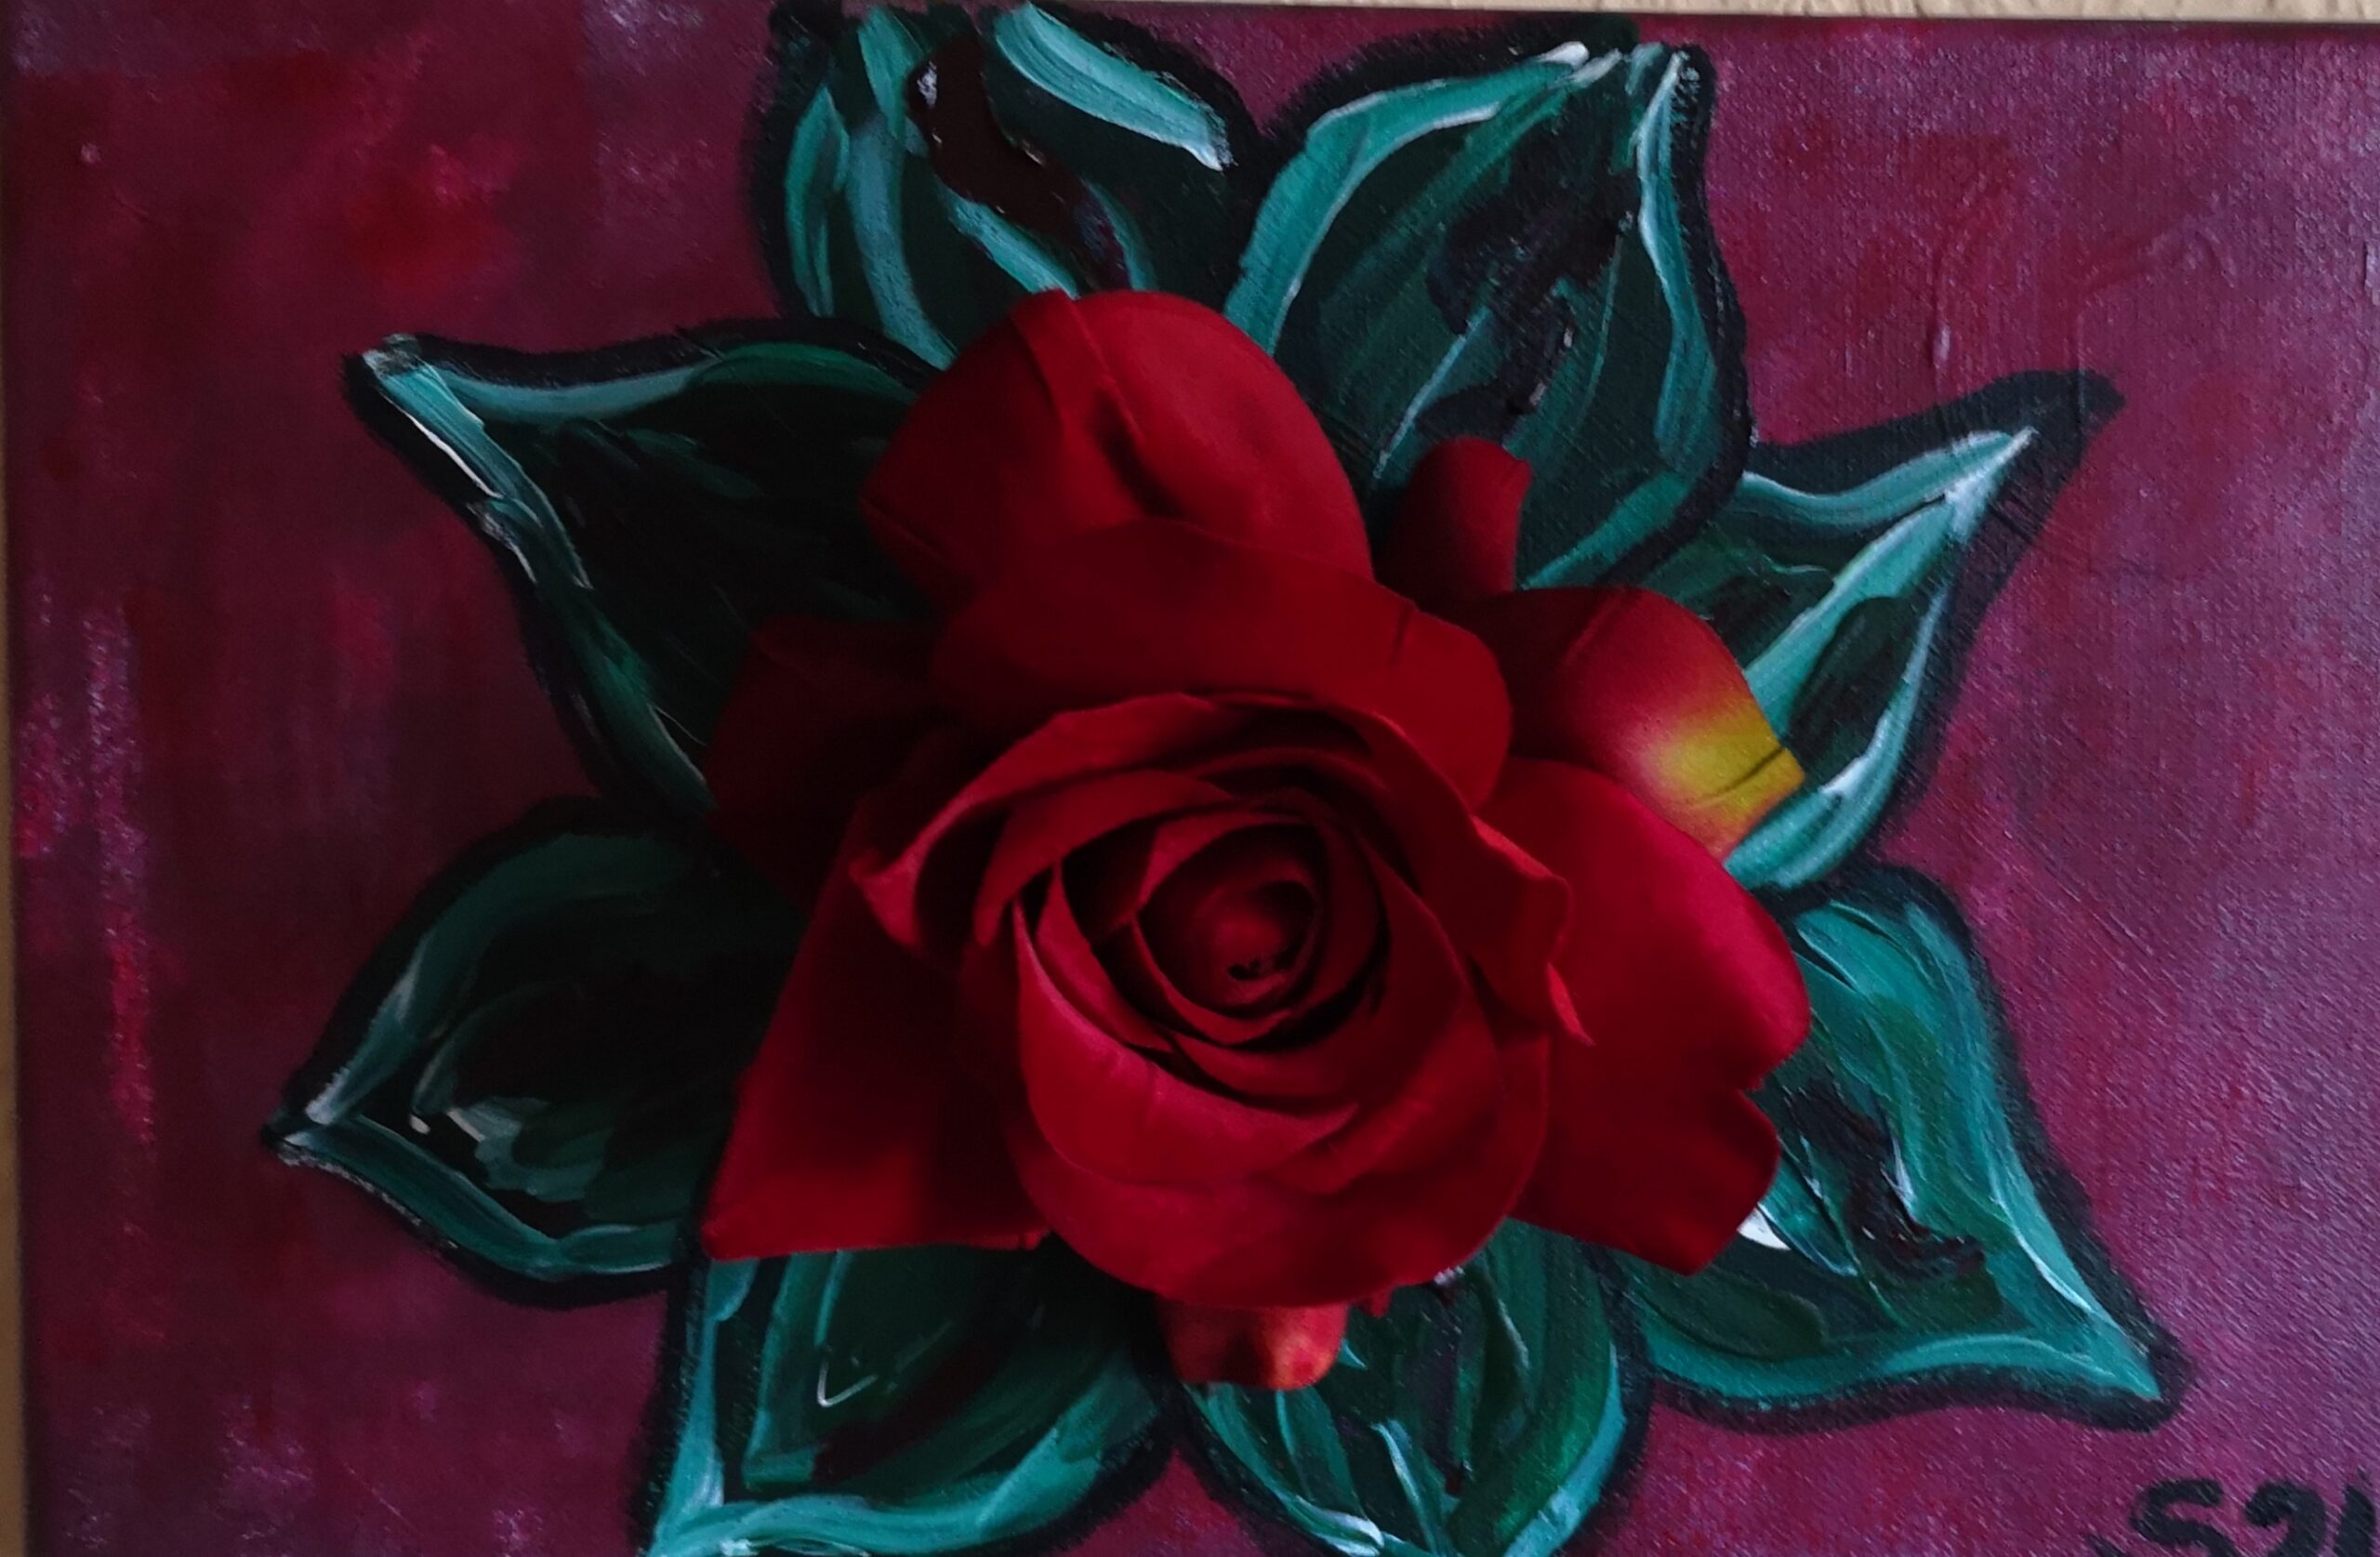 Bild mit Blätern und künstlicher Rosenblüte in der Mitte